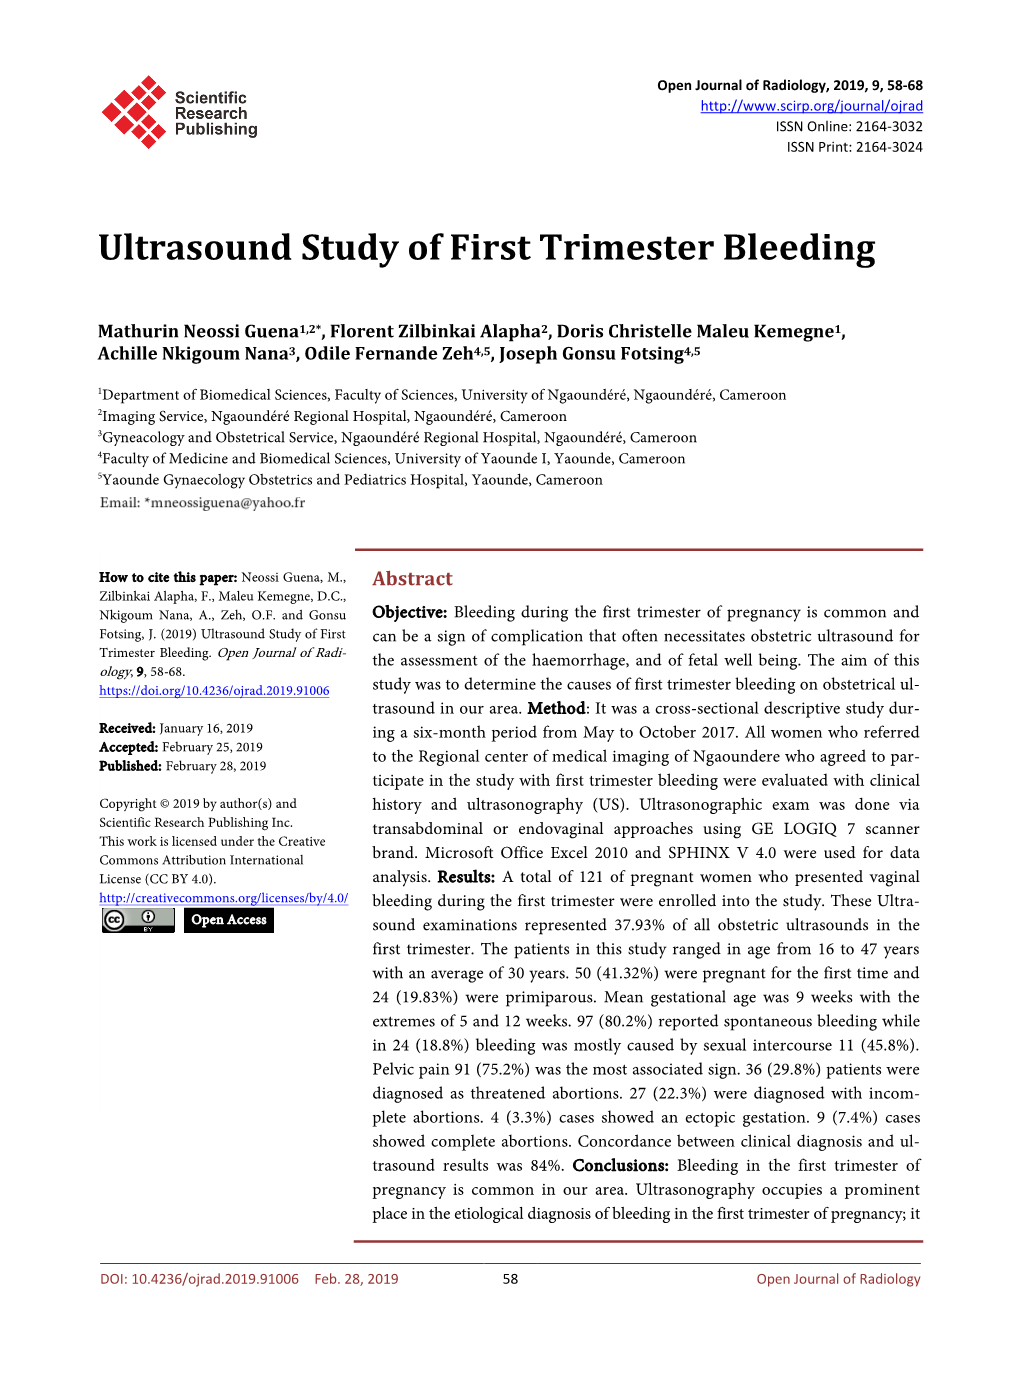 Ultrasound Study of First Trimester Bleeding